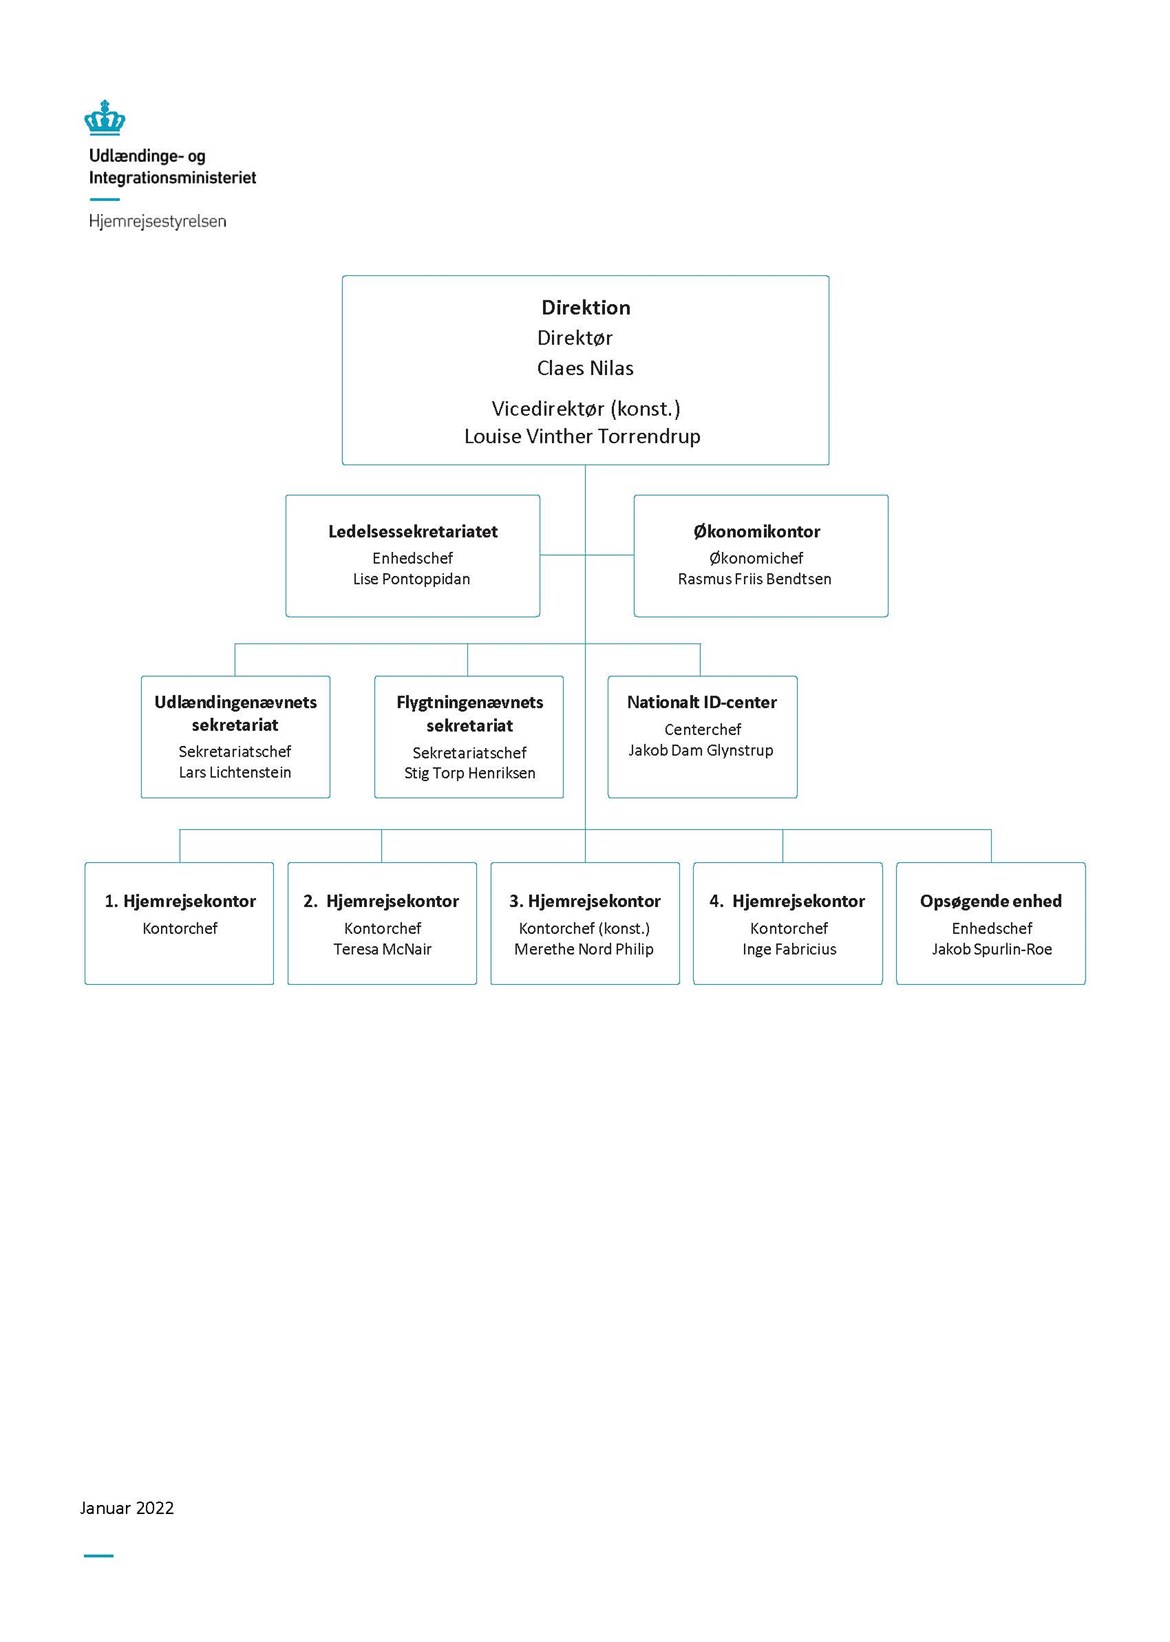 Organisationsdiagram for Hjemrejsestyrelsen